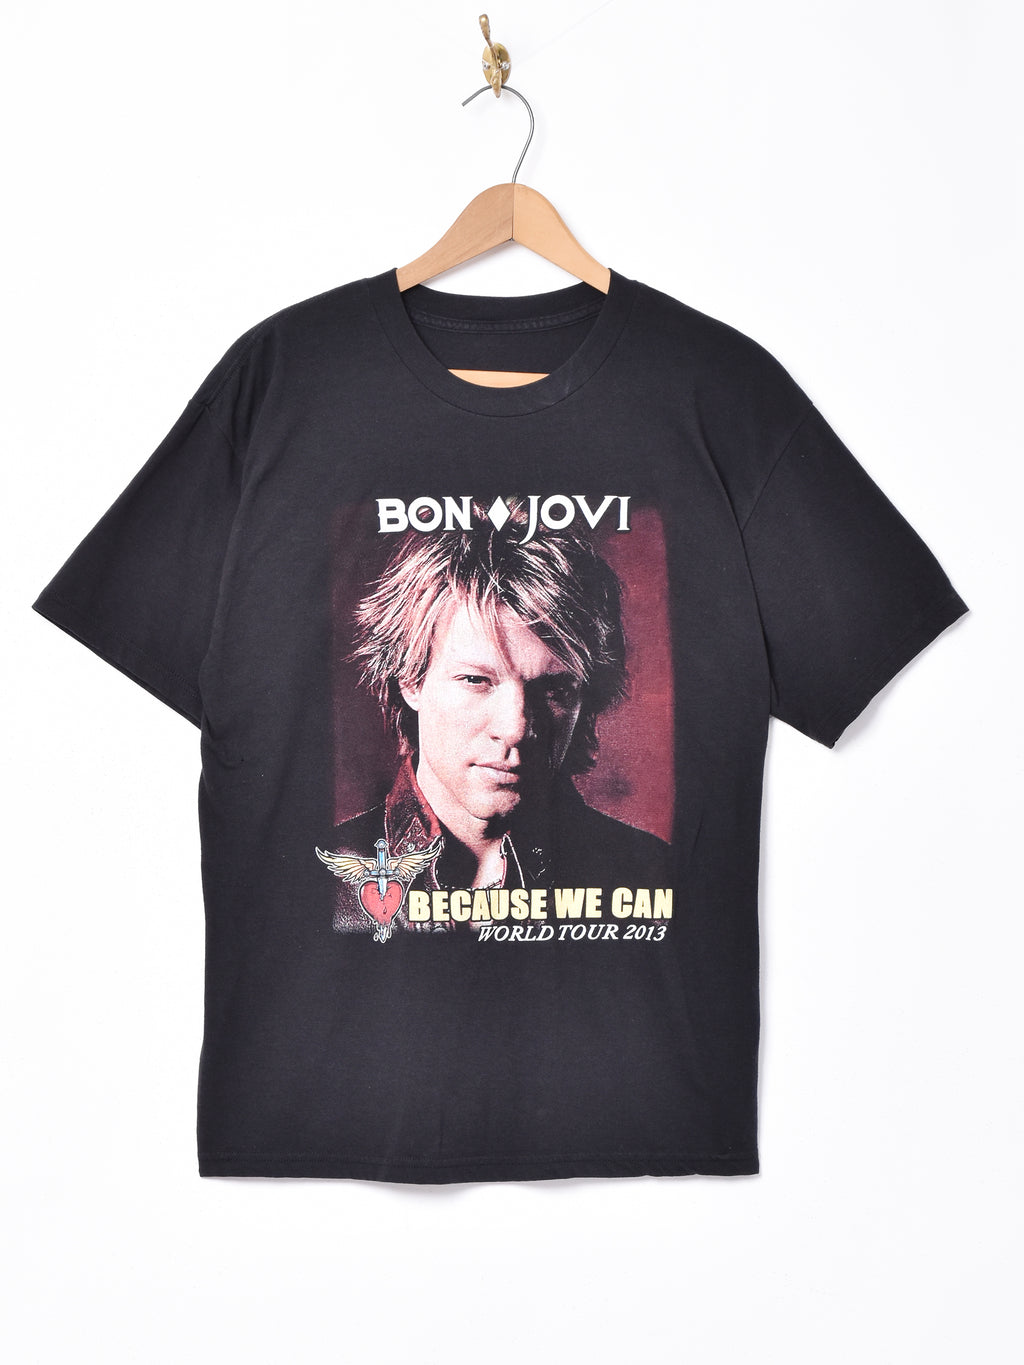 BON JOVI ツアーTシャツ – 古着屋Top of the Hillのネット通販サイト